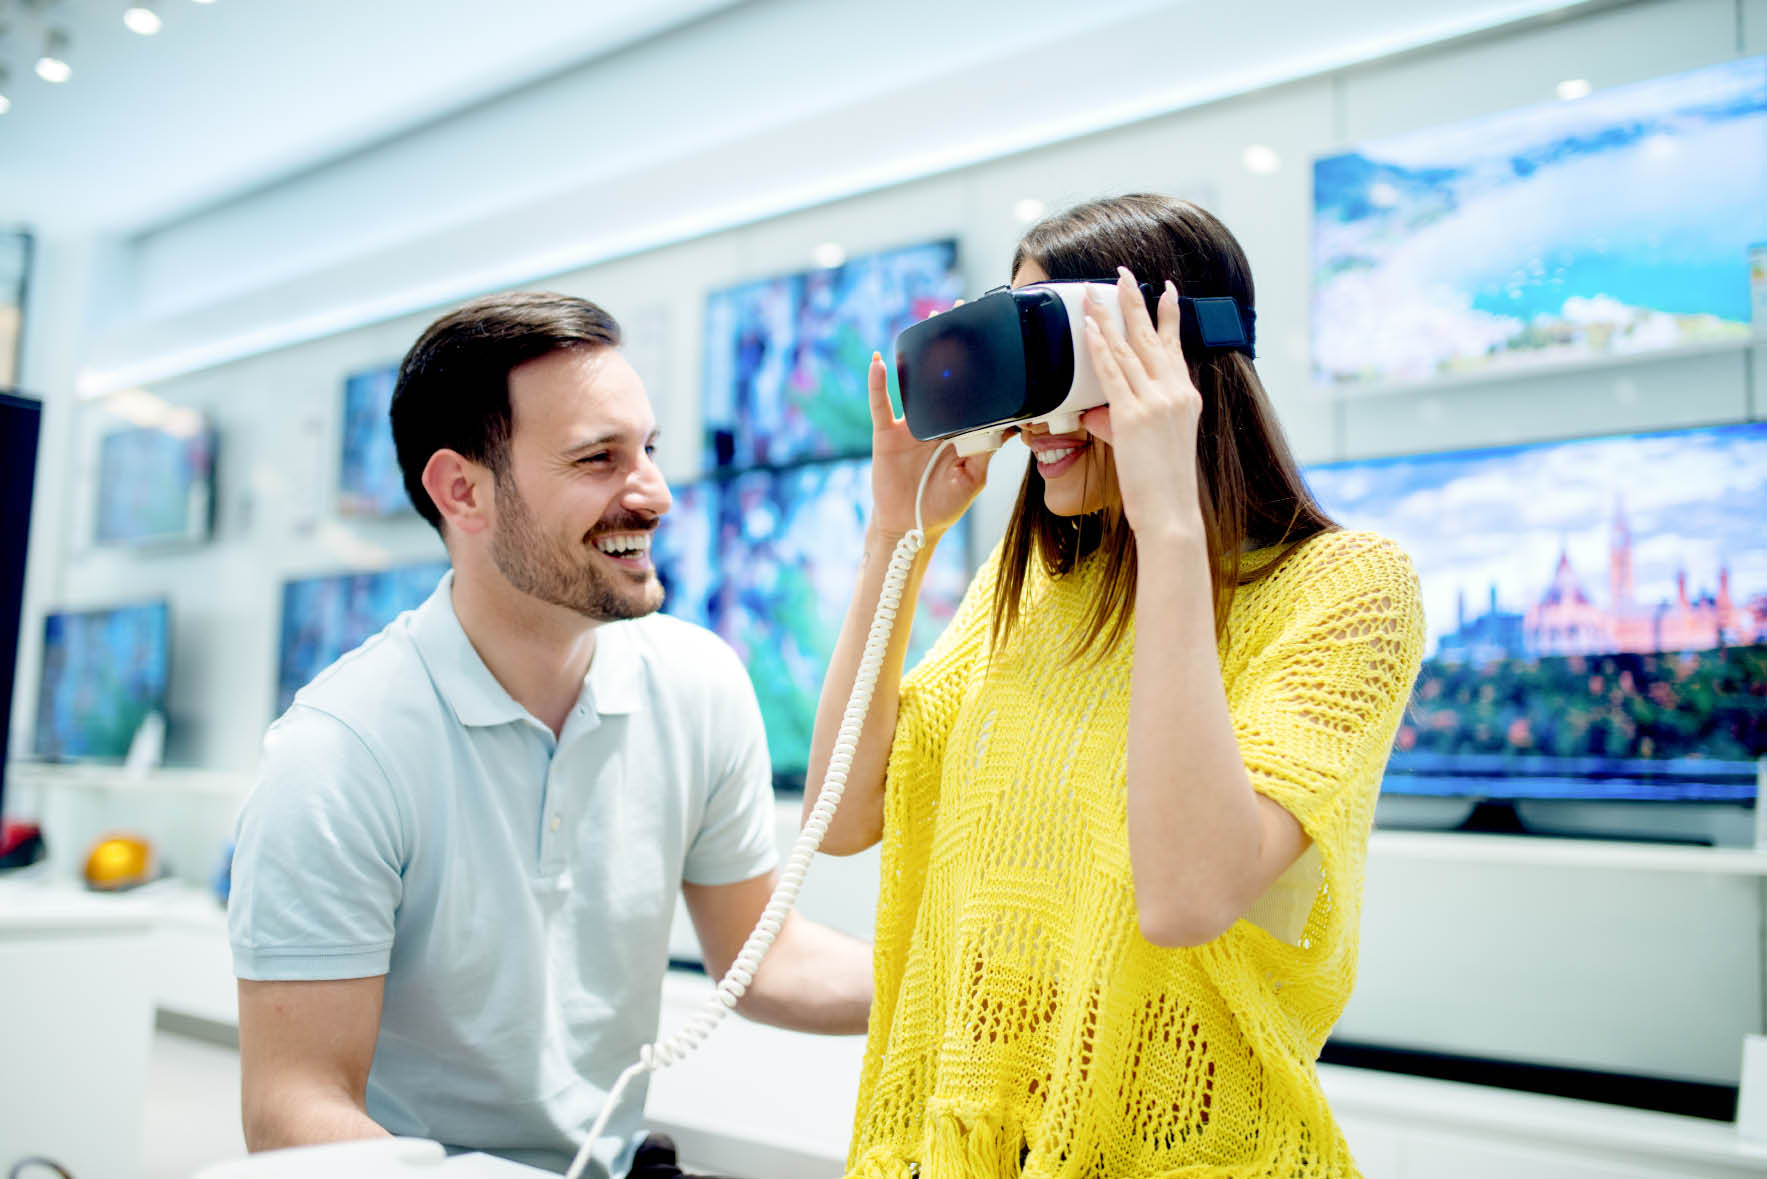 Plus de trois quarts des marques vont offrir un service en réalité virtuelle  à l’horizon 2020 afin d’améliorer l’expérience client. © shutterstock